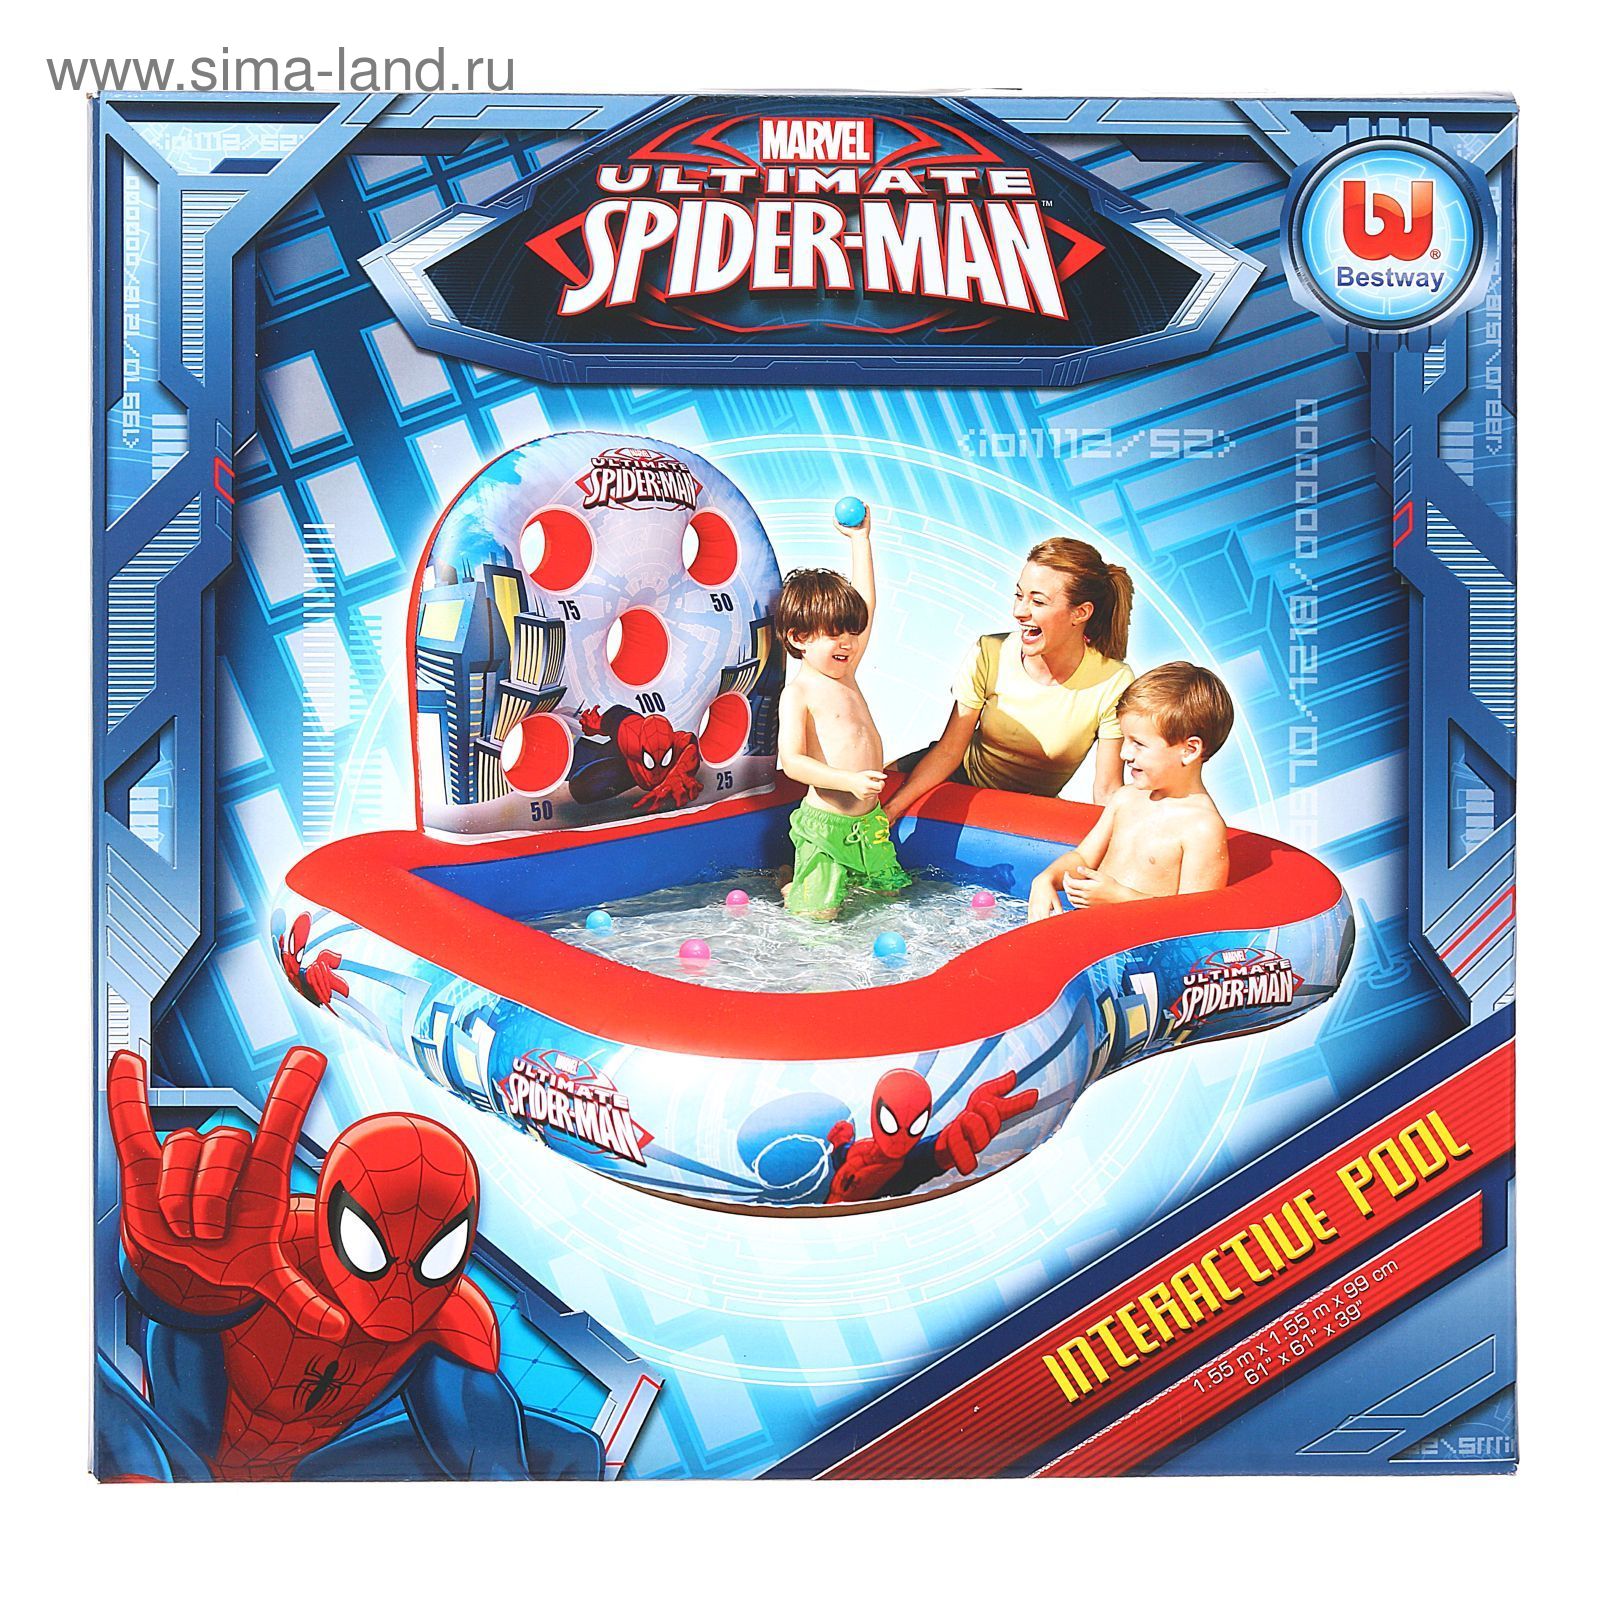 Игровой центр-тир "Человек-паук", 155 х 99 см, 6 мячей, от 3 лет